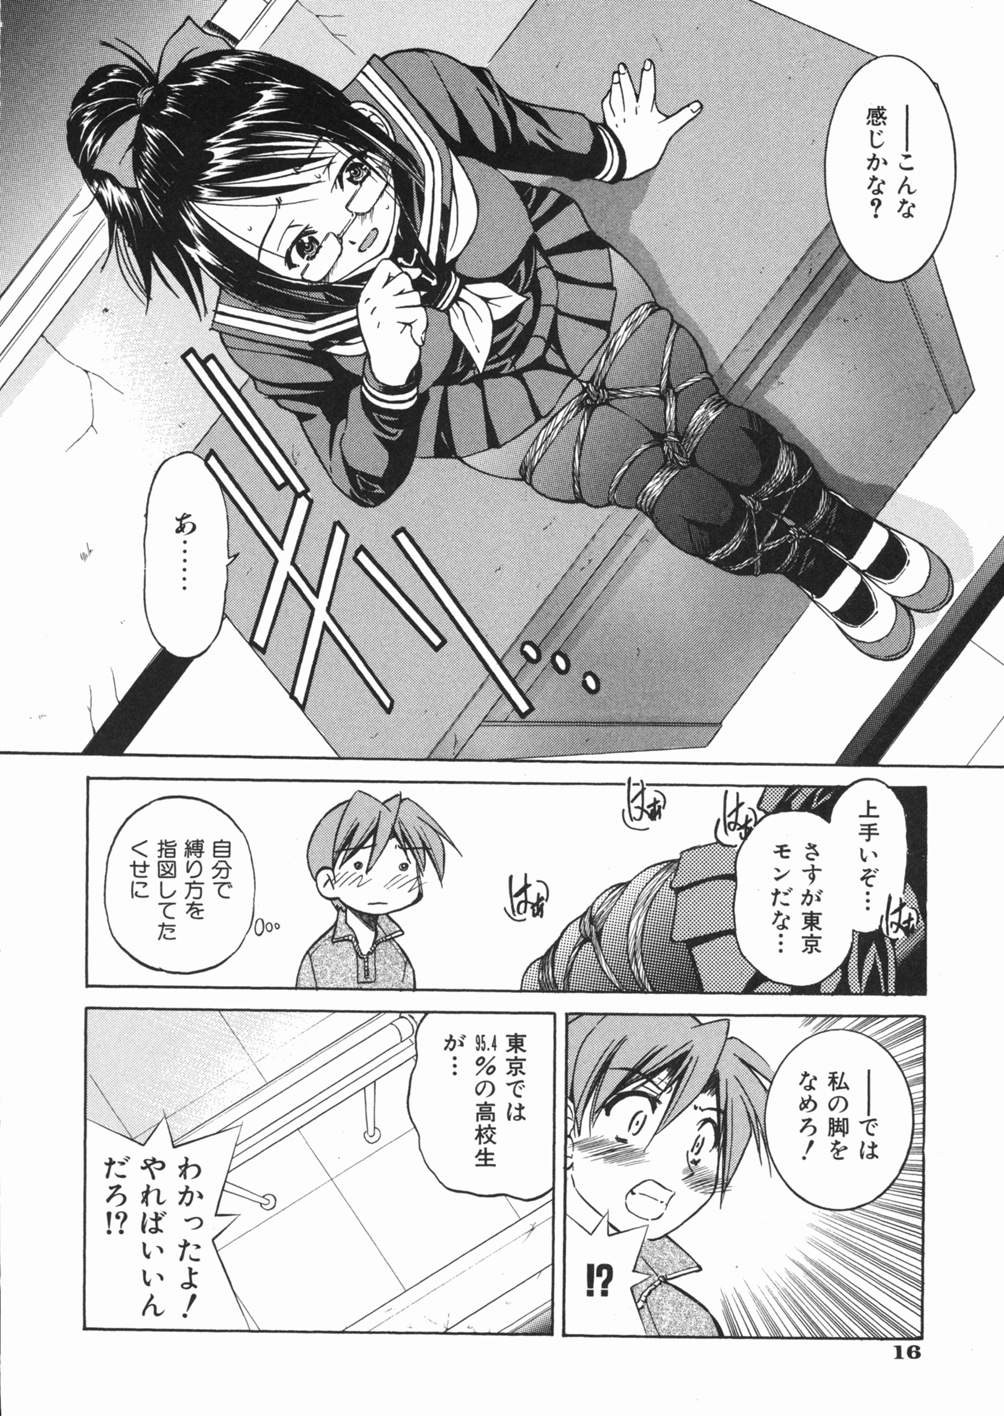 [Inoue Yoshihisa] Sunao page 20 full